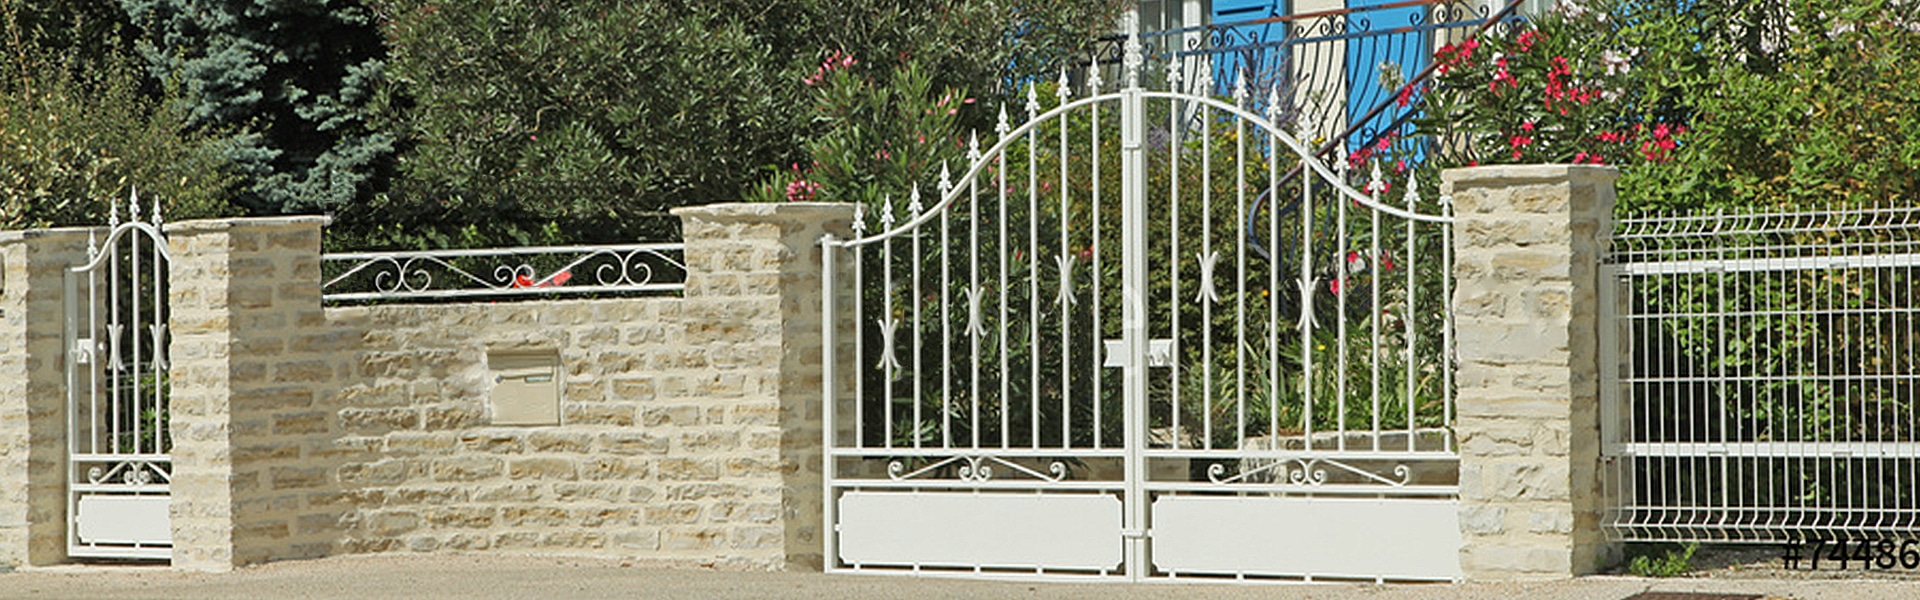 Mur de clôture